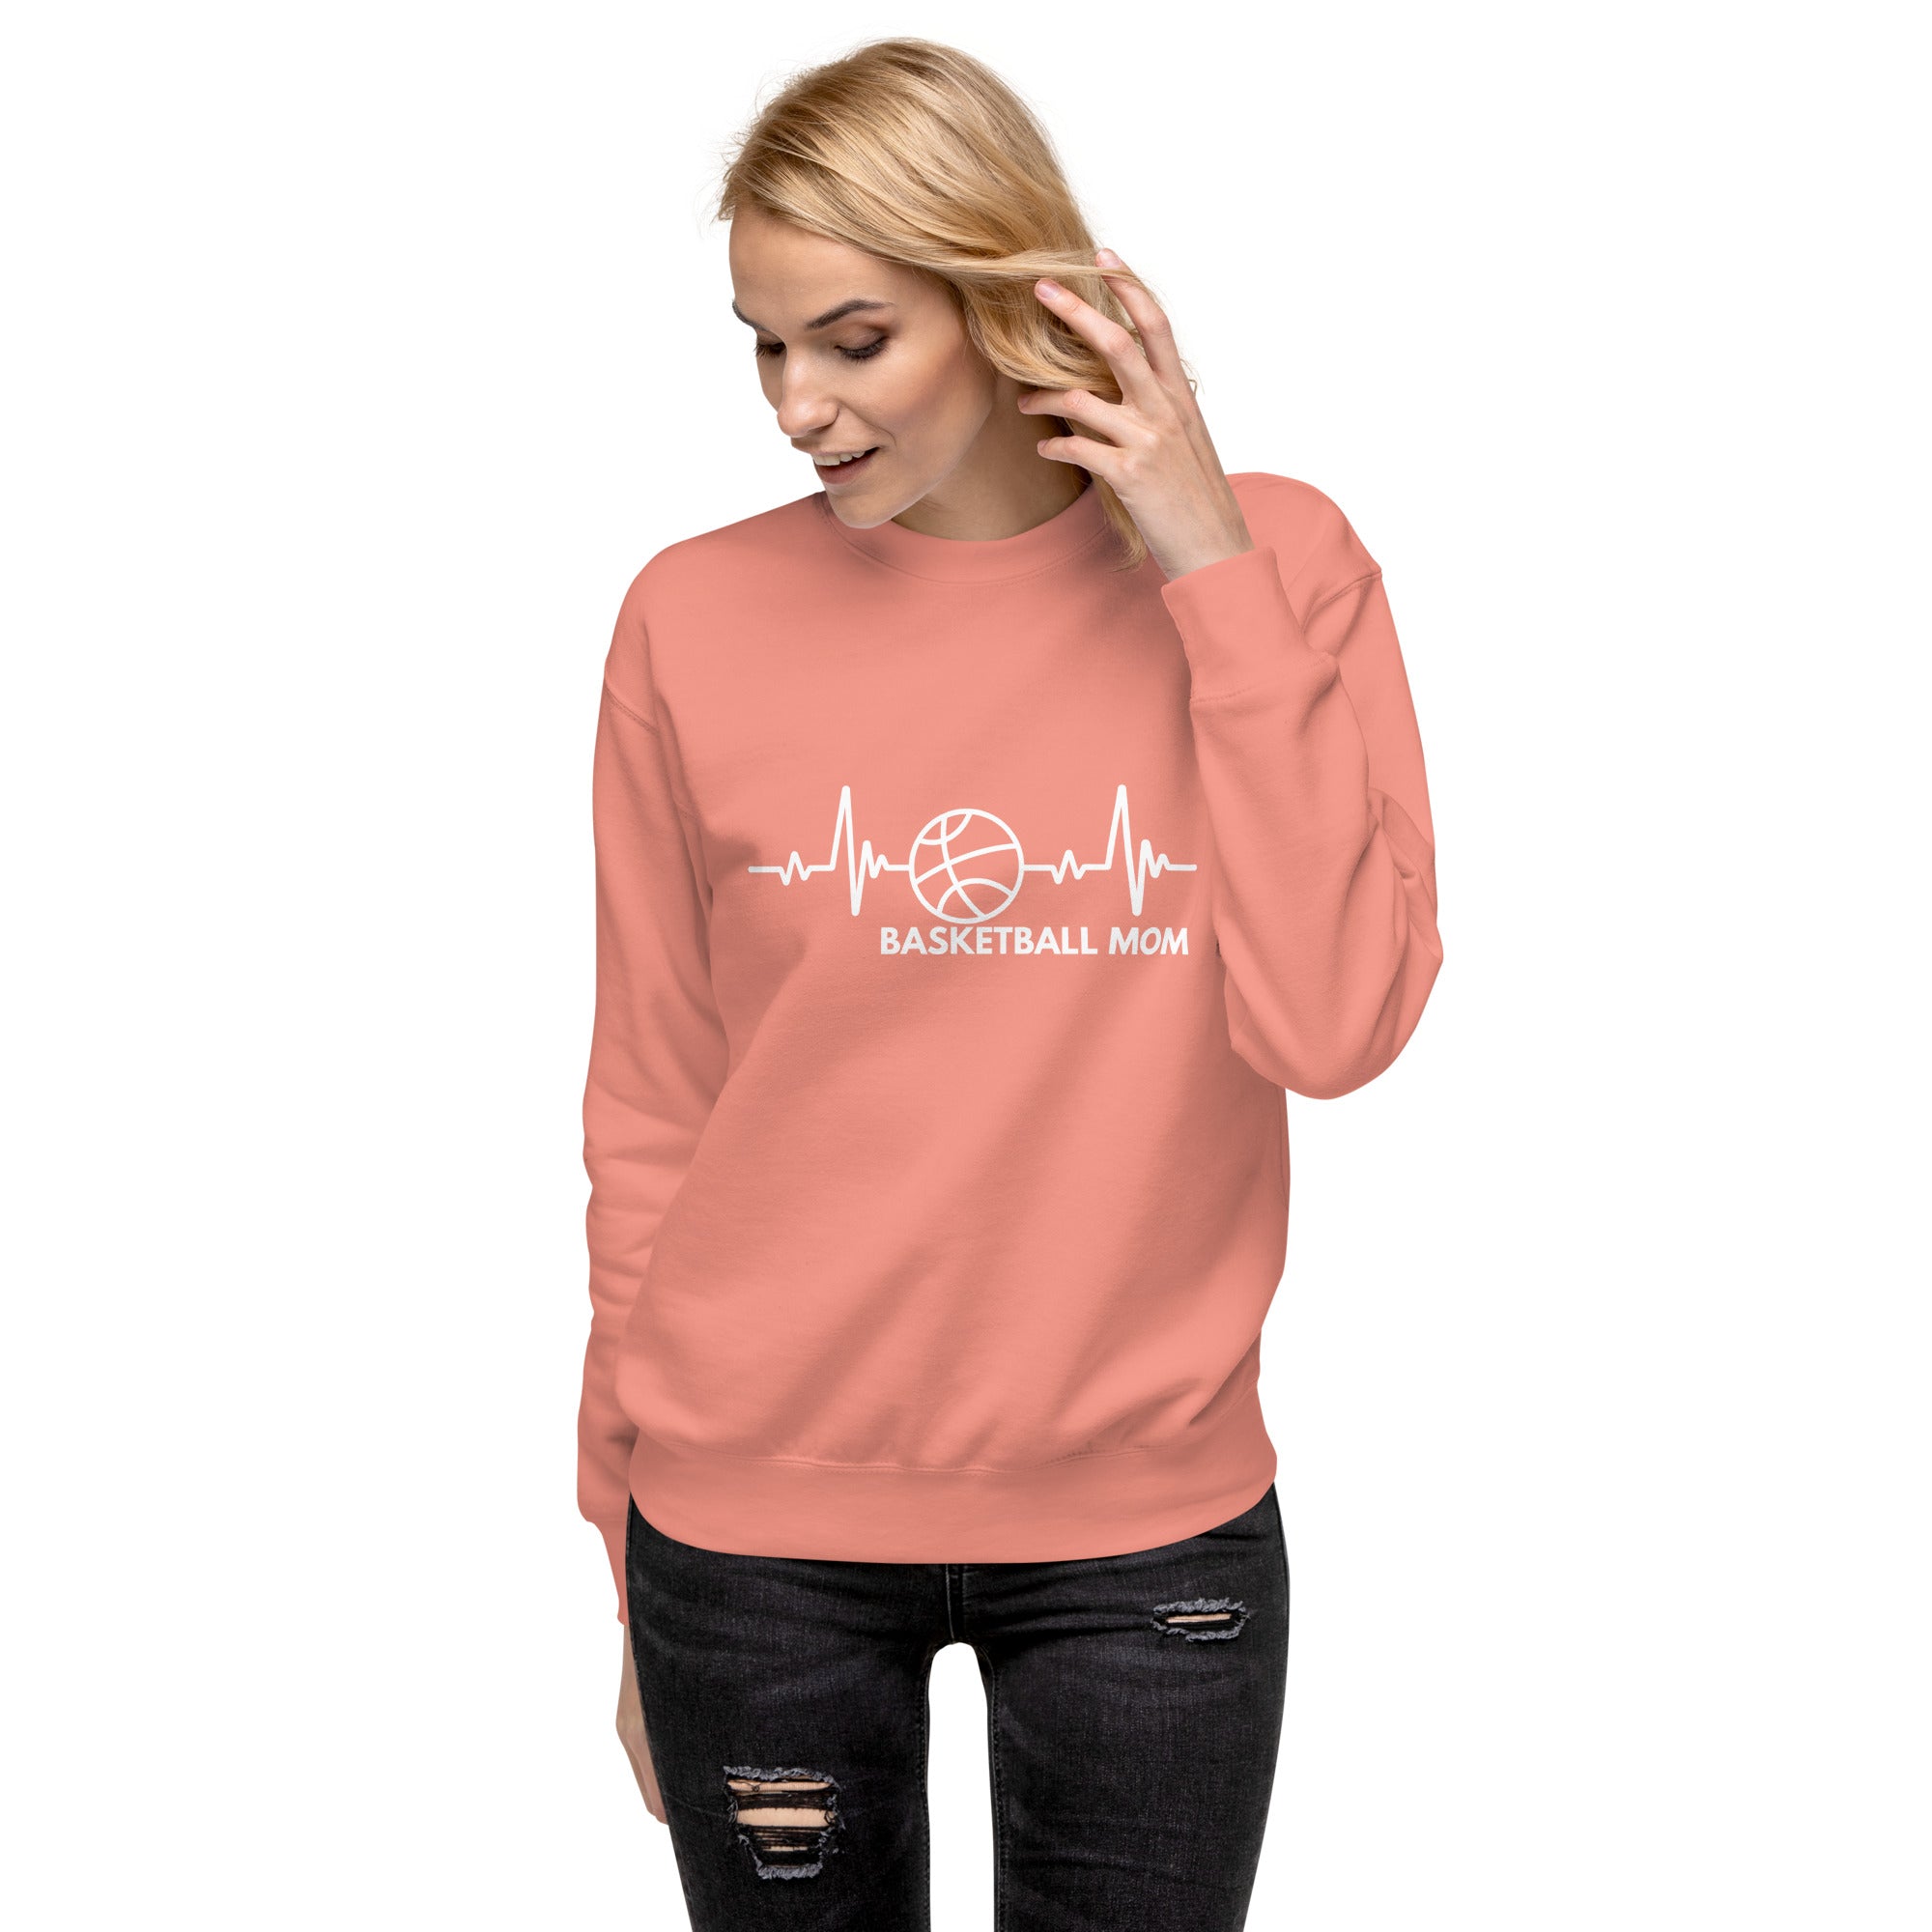 Basketball Mom Women's Premium Sweatshirt